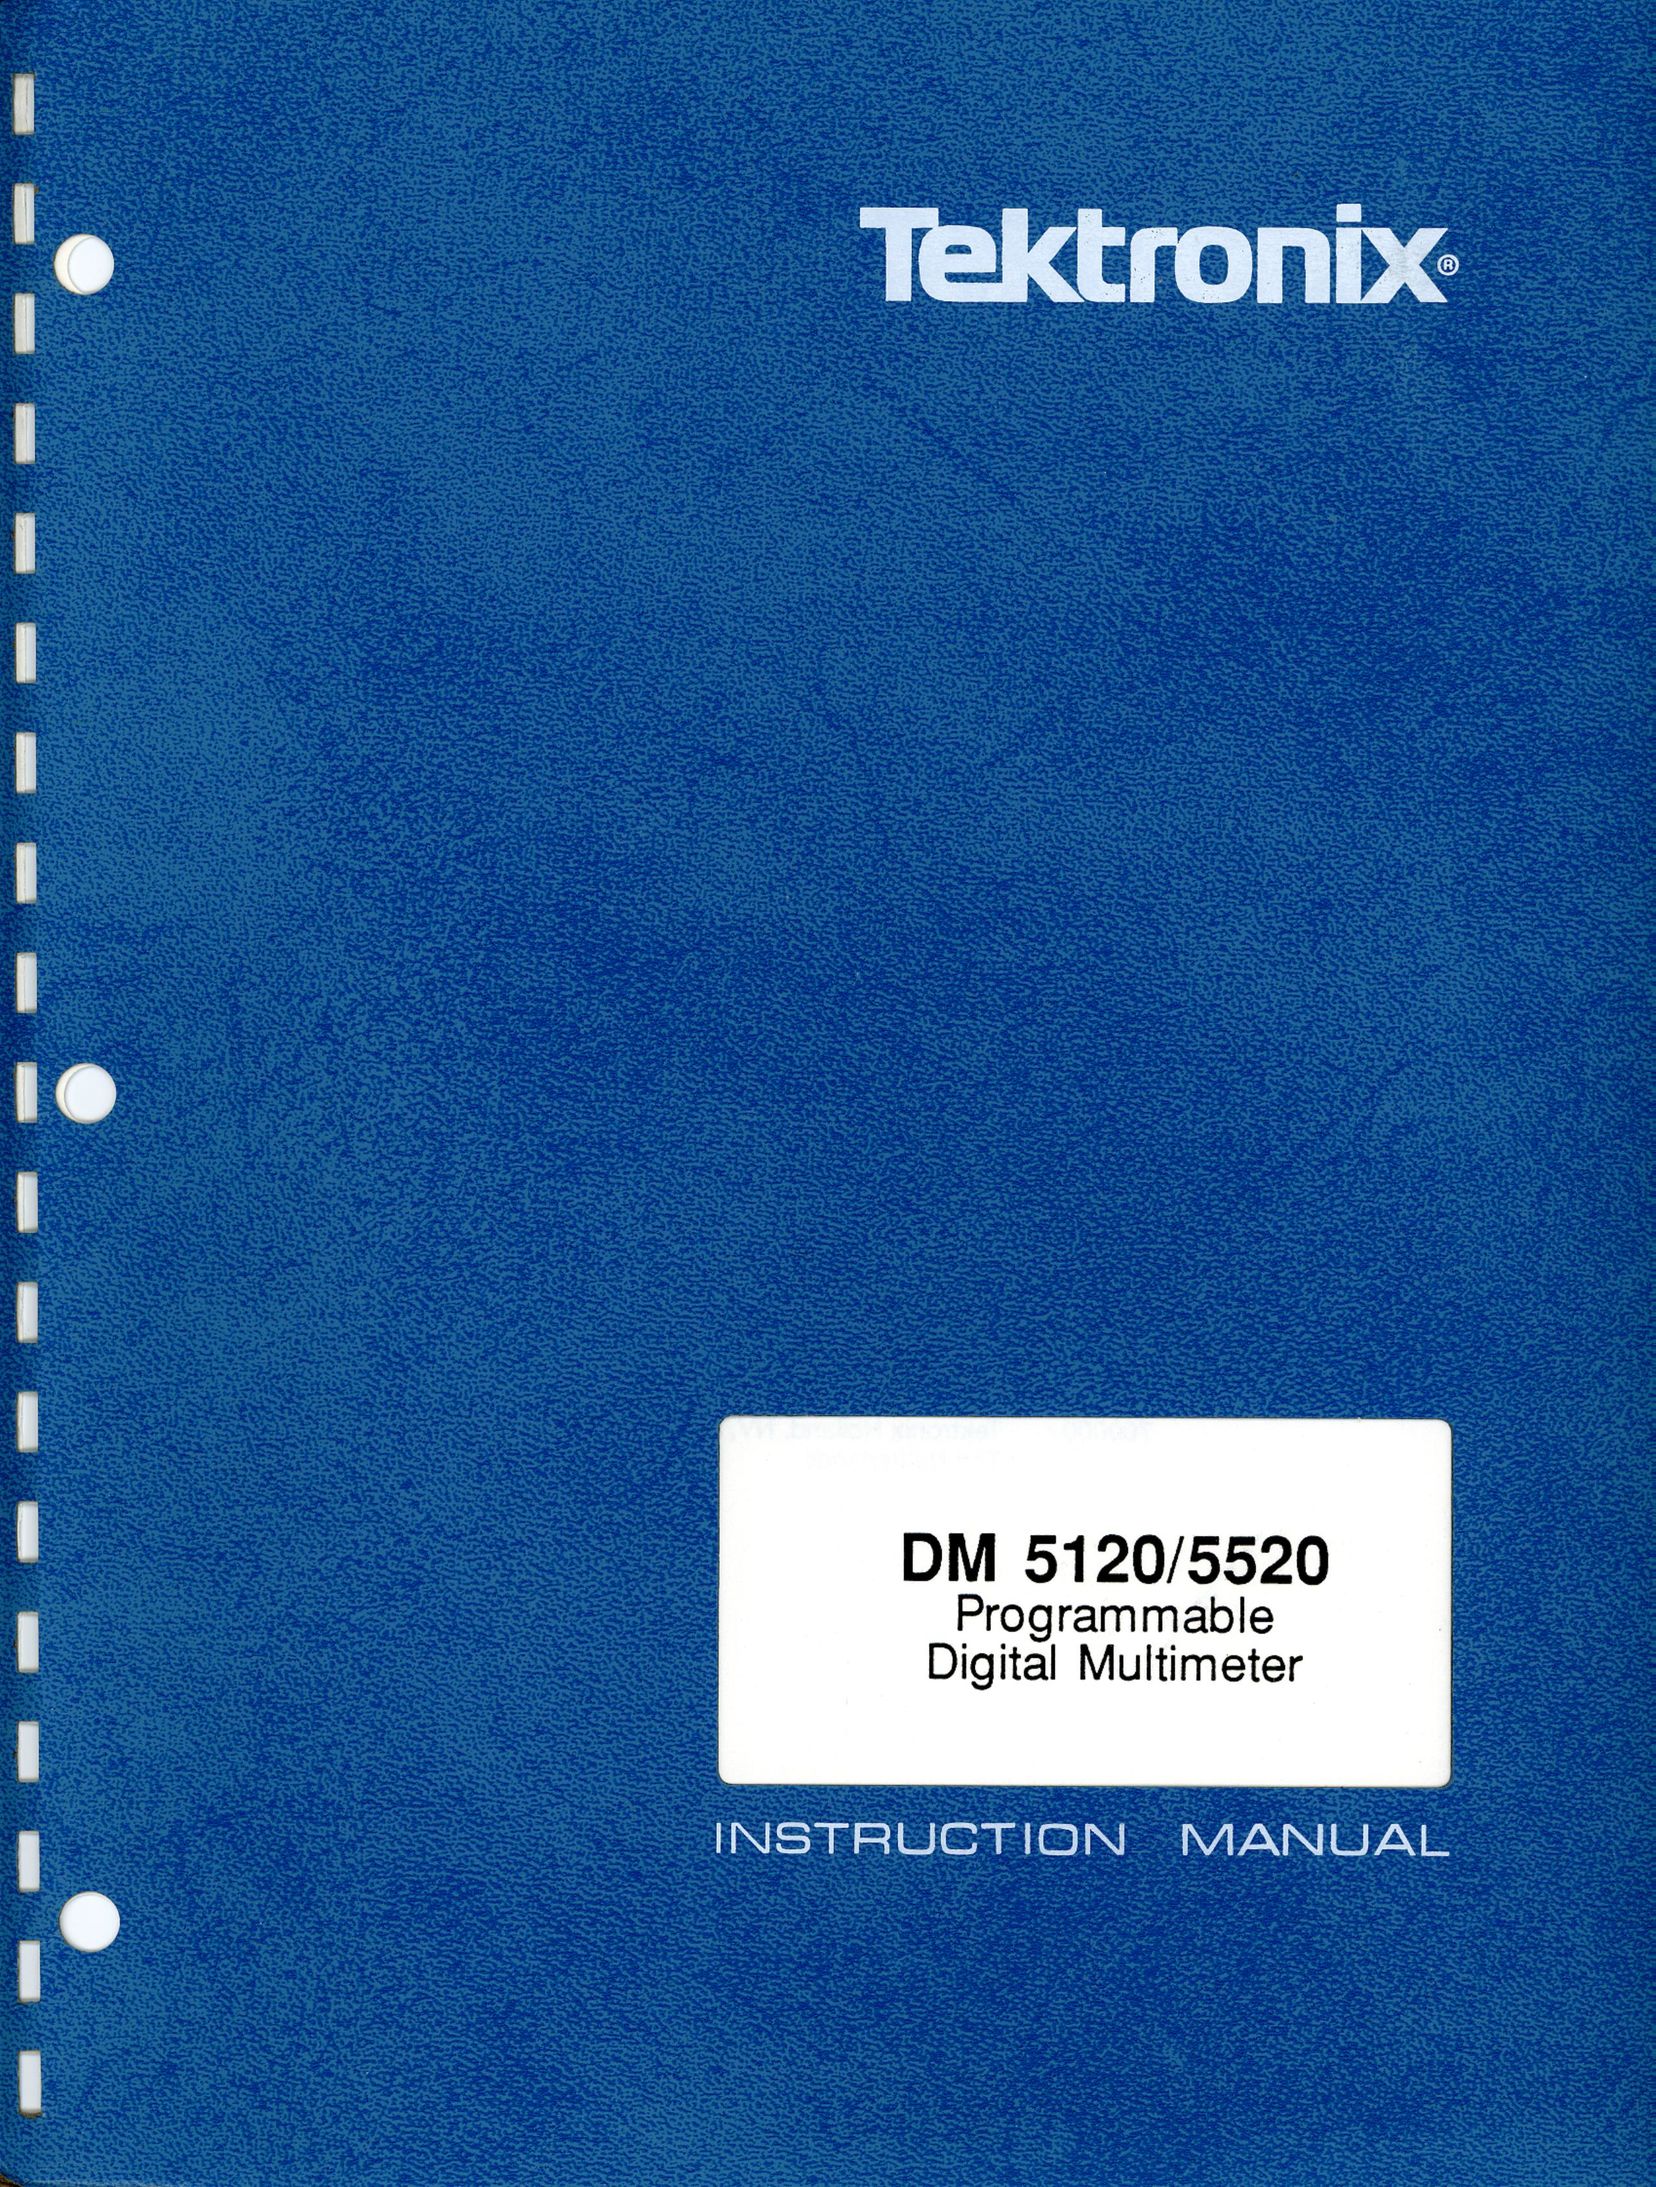 Tektronix DM 5120 Caulking Gun User Manual